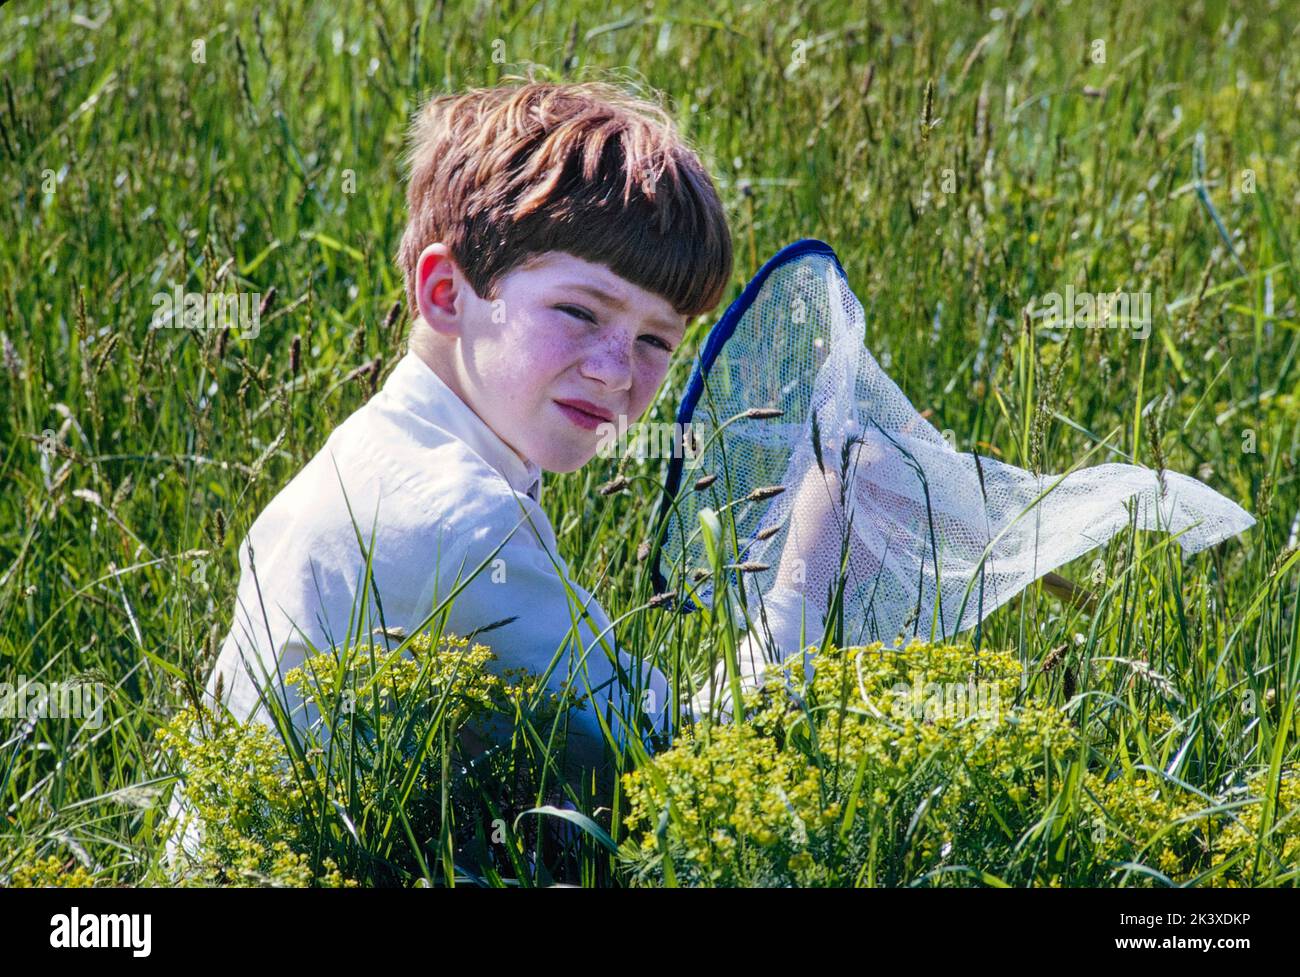 Giovane ragazzo seduto in campo erboso con Butterfly Net, St. James, New York, USA, toni Frissell Collection, Maggio 1966 Foto Stock